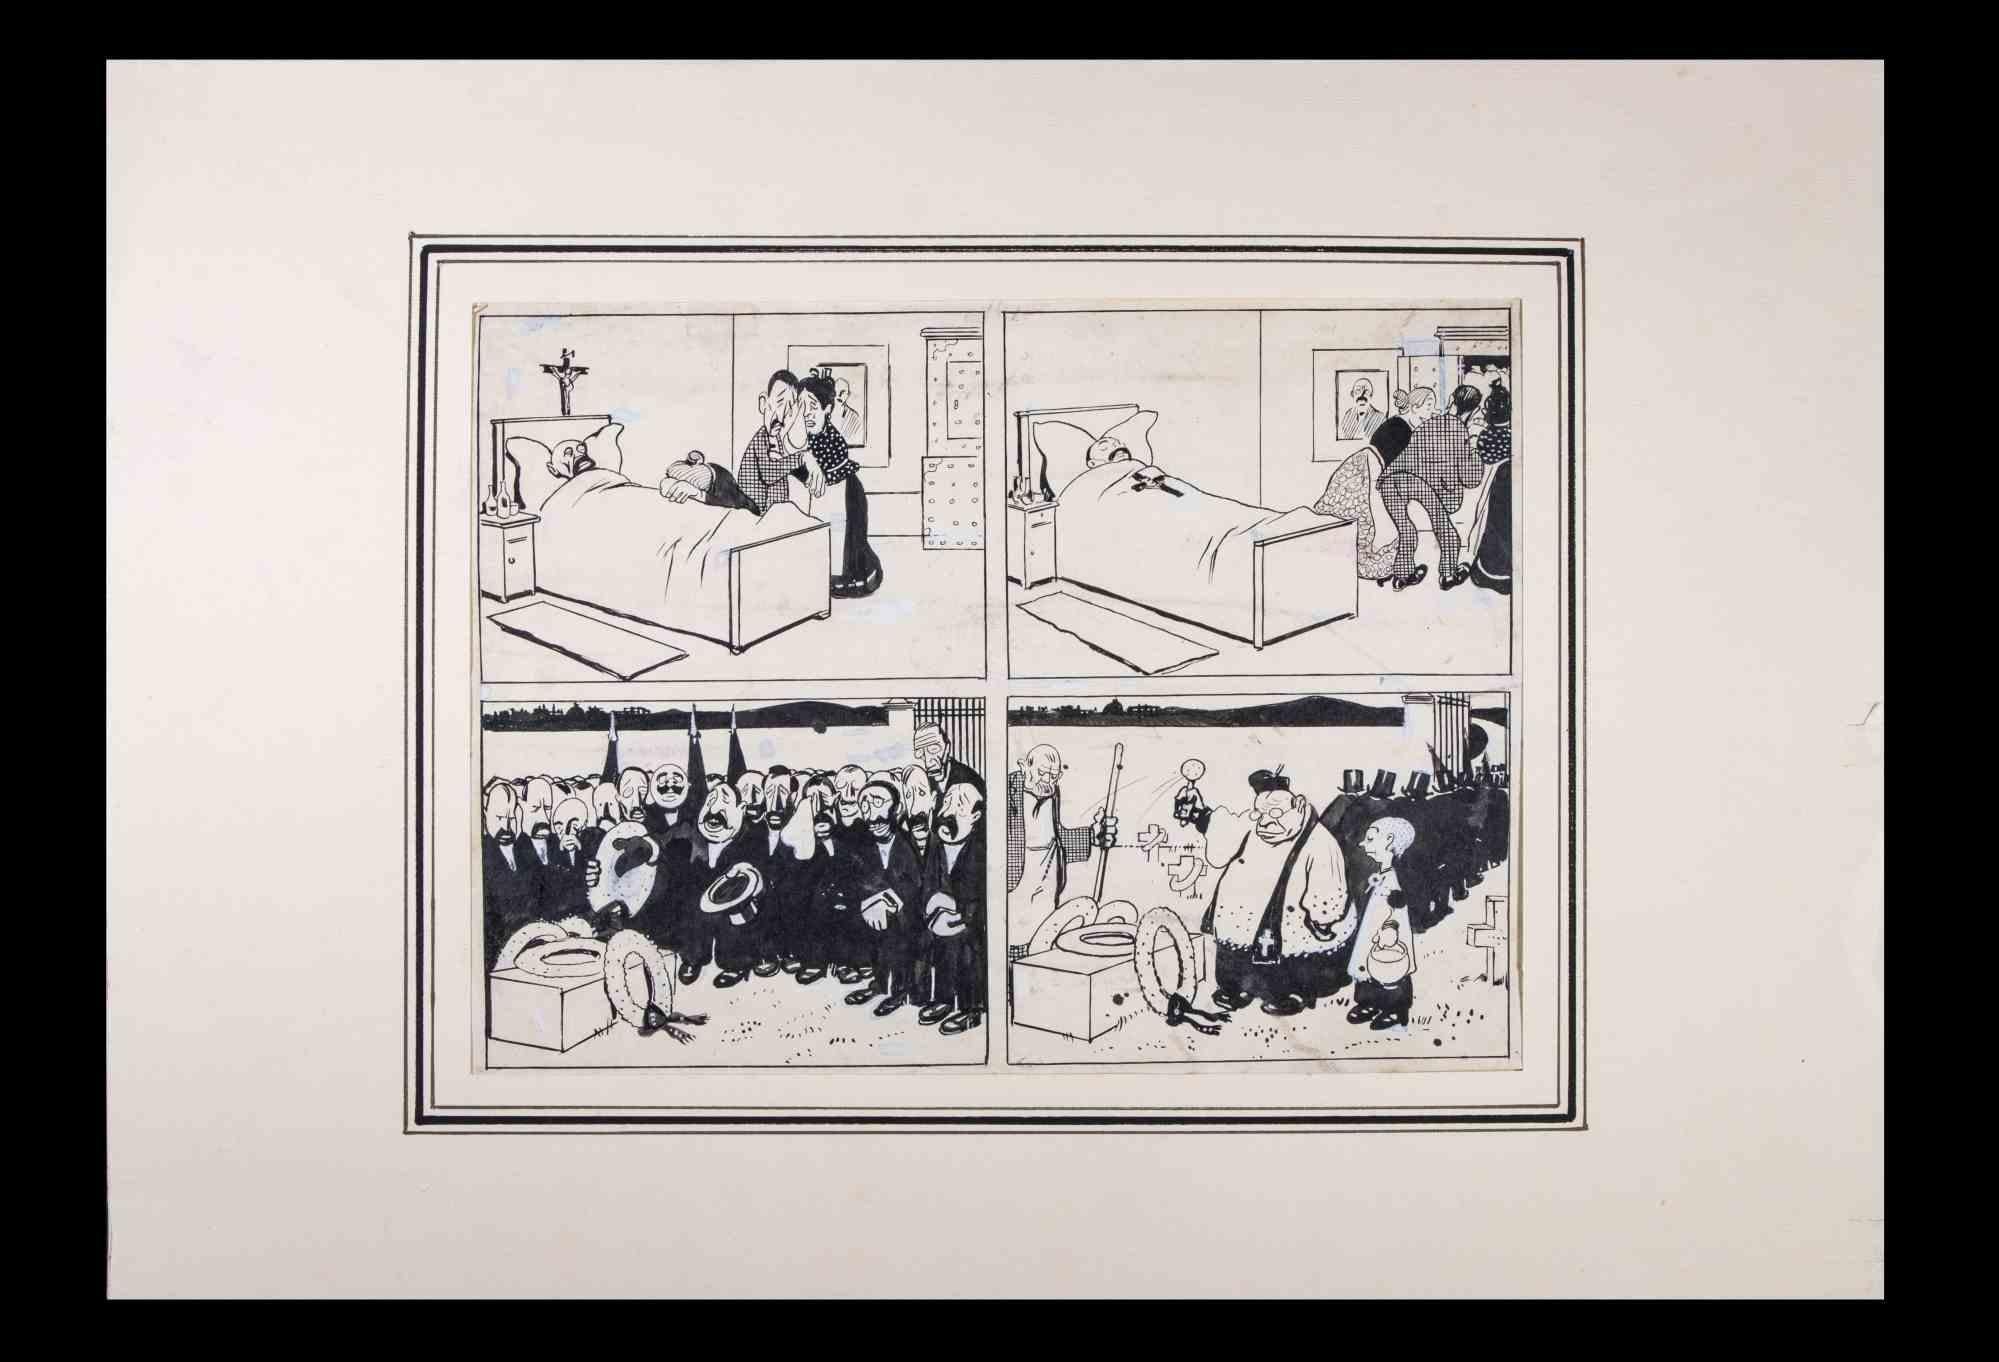 Die Trauer ist ein zeichnerisches Kunstwerk von Carlo Rivalta (1887-1941).

Cartoons in vier Rahmen Geschichte, China Tuschezeichnung auf Papier.

Der Erhaltungszustand ist gut mit leichten Stockflecken.

Inklusive eines Passepartouts aus Karton.